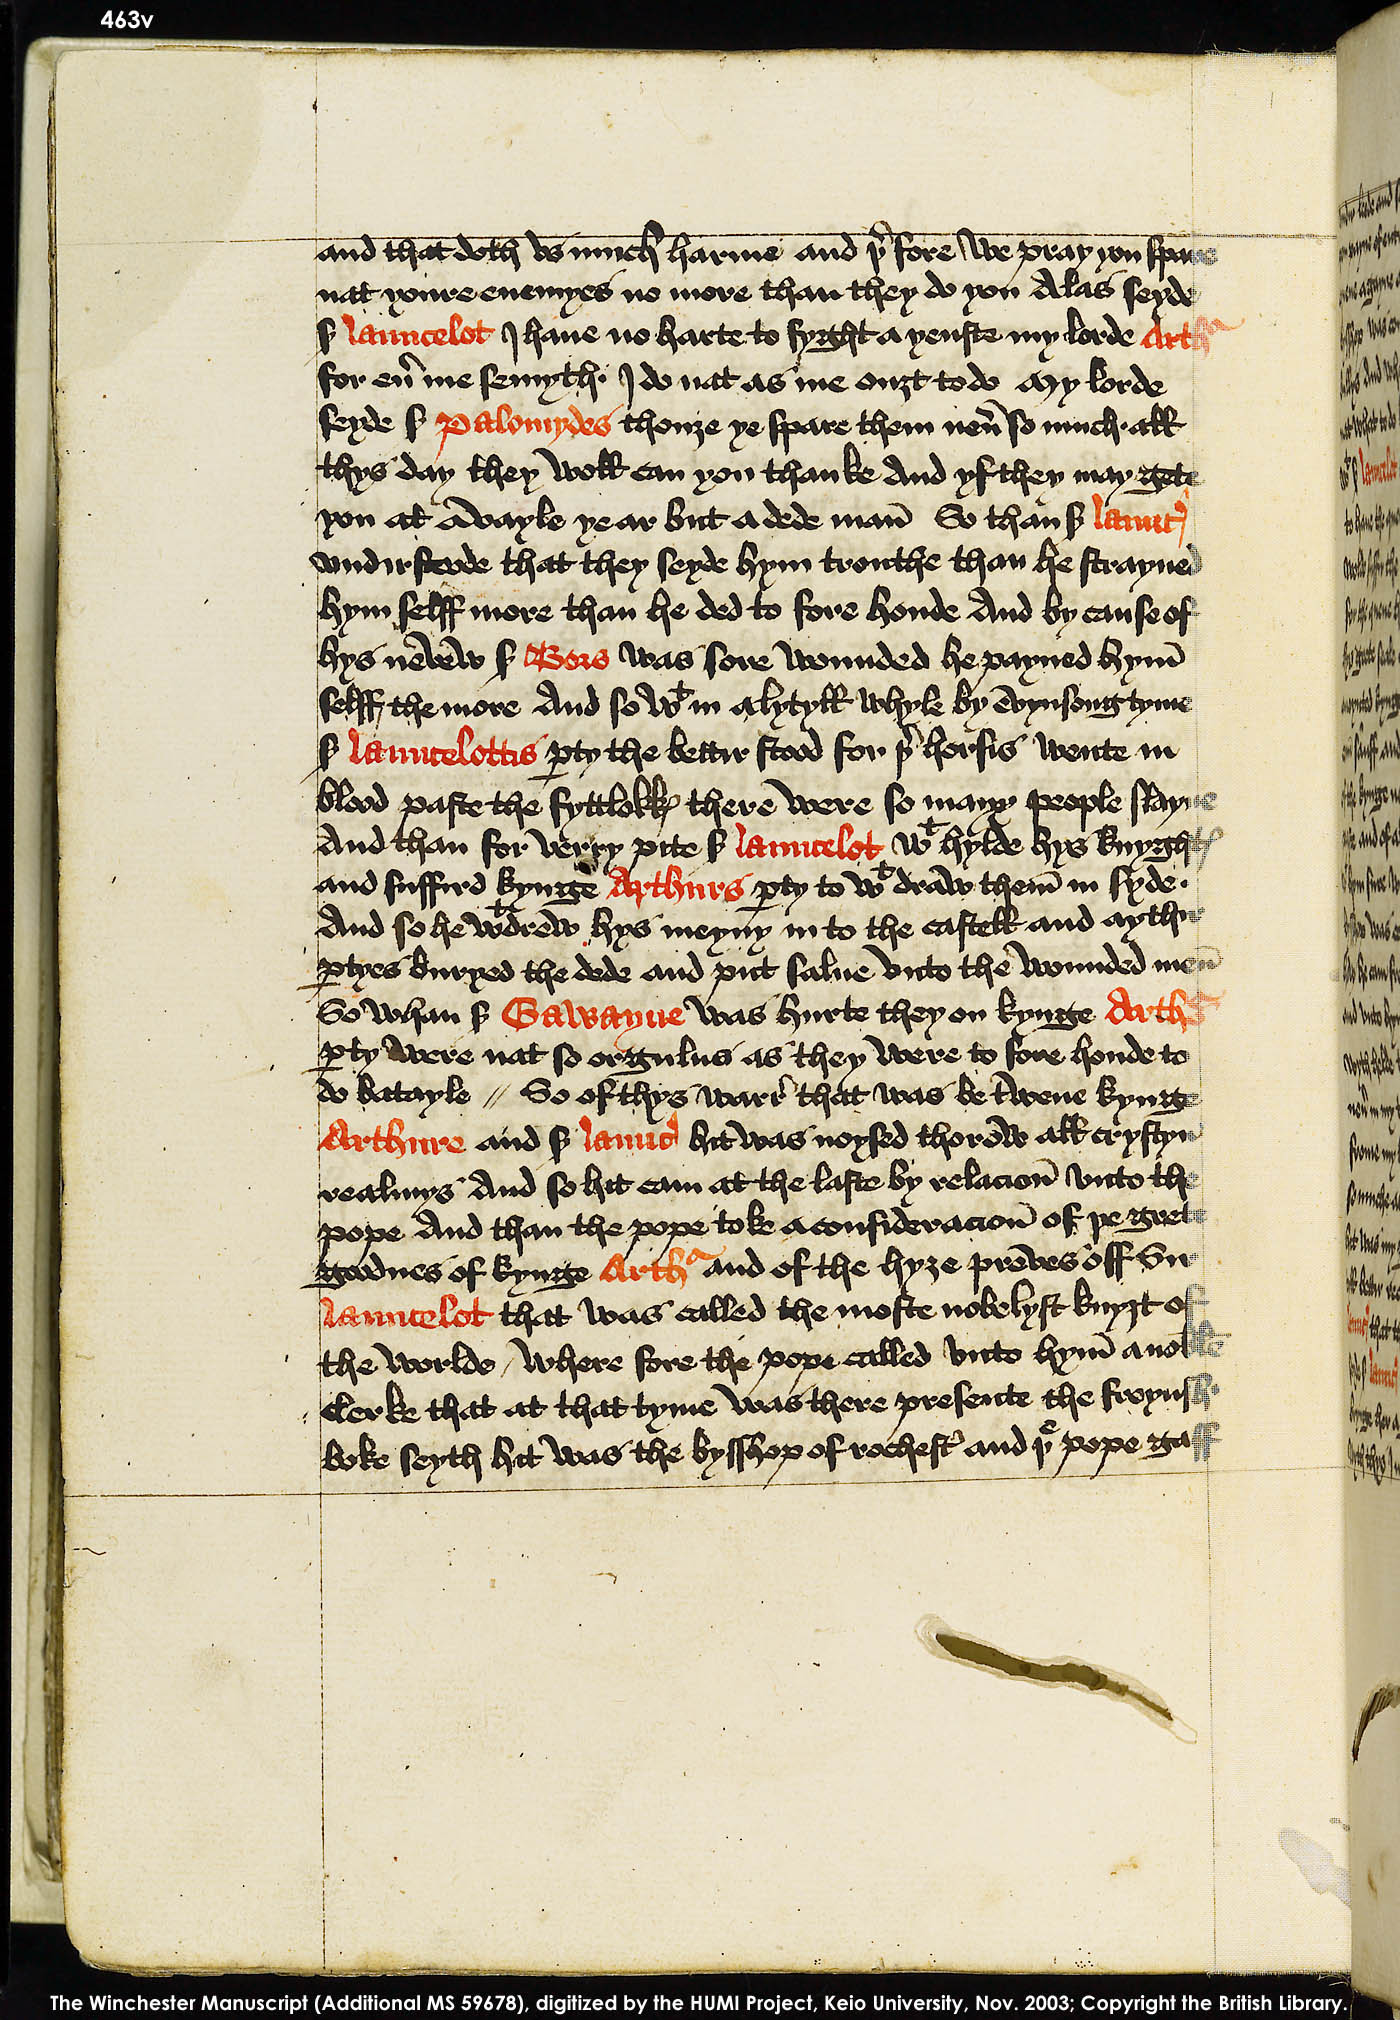 Folio 463v